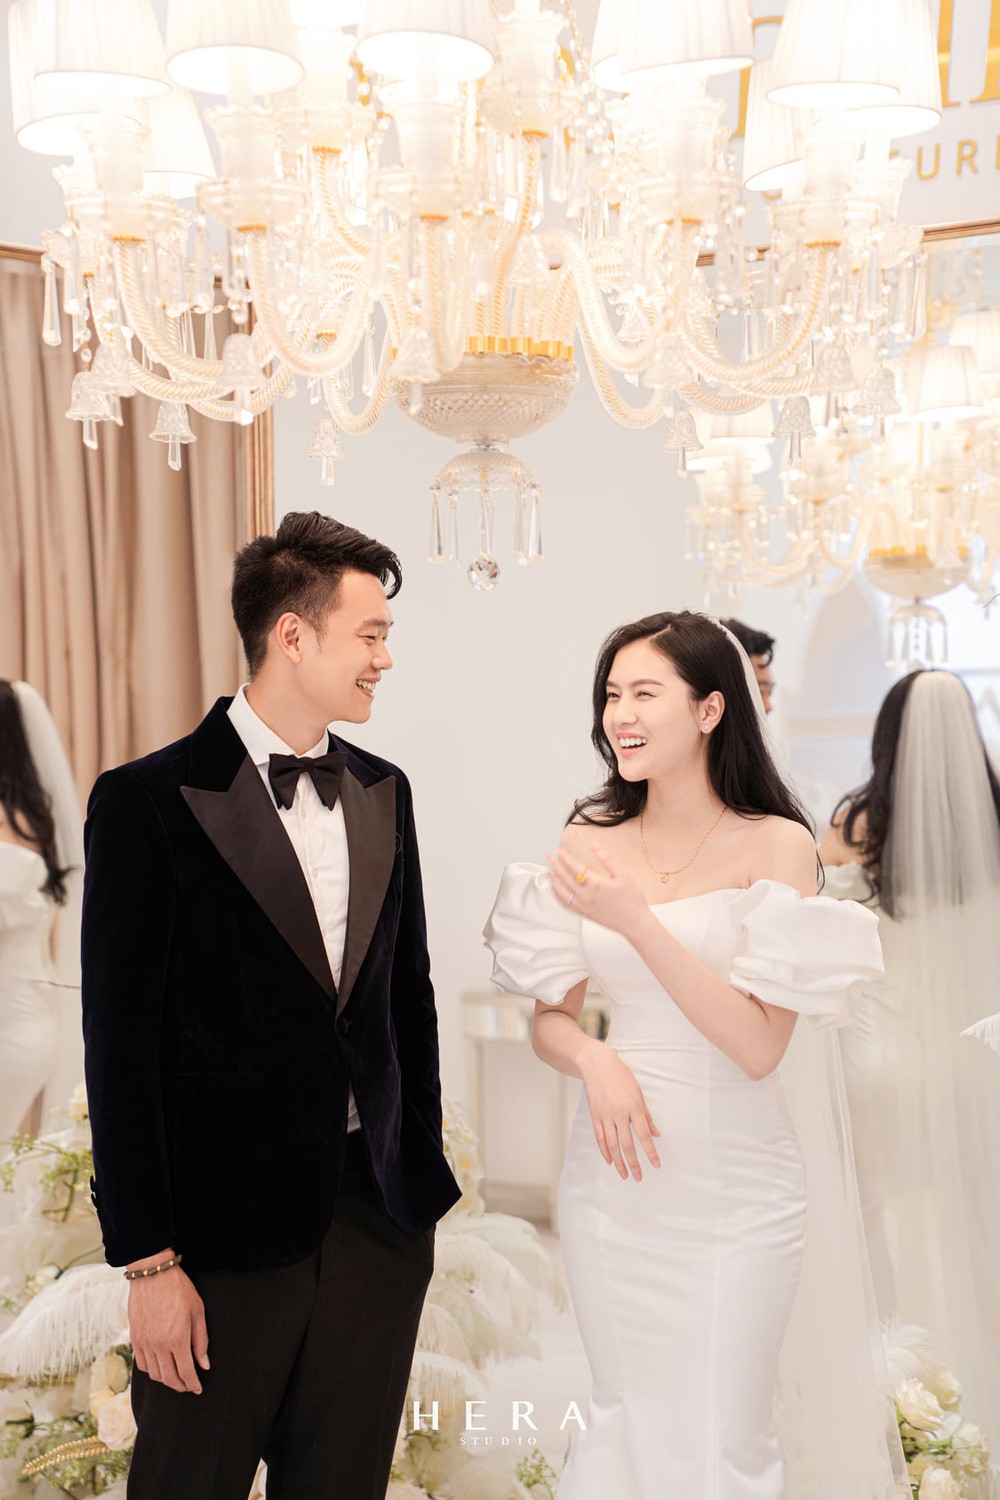 Thành Chung phong độ ngời ngời ở hậu trường chụp ảnh cưới, cười tít bên cô dâu xinh - Ảnh 1.